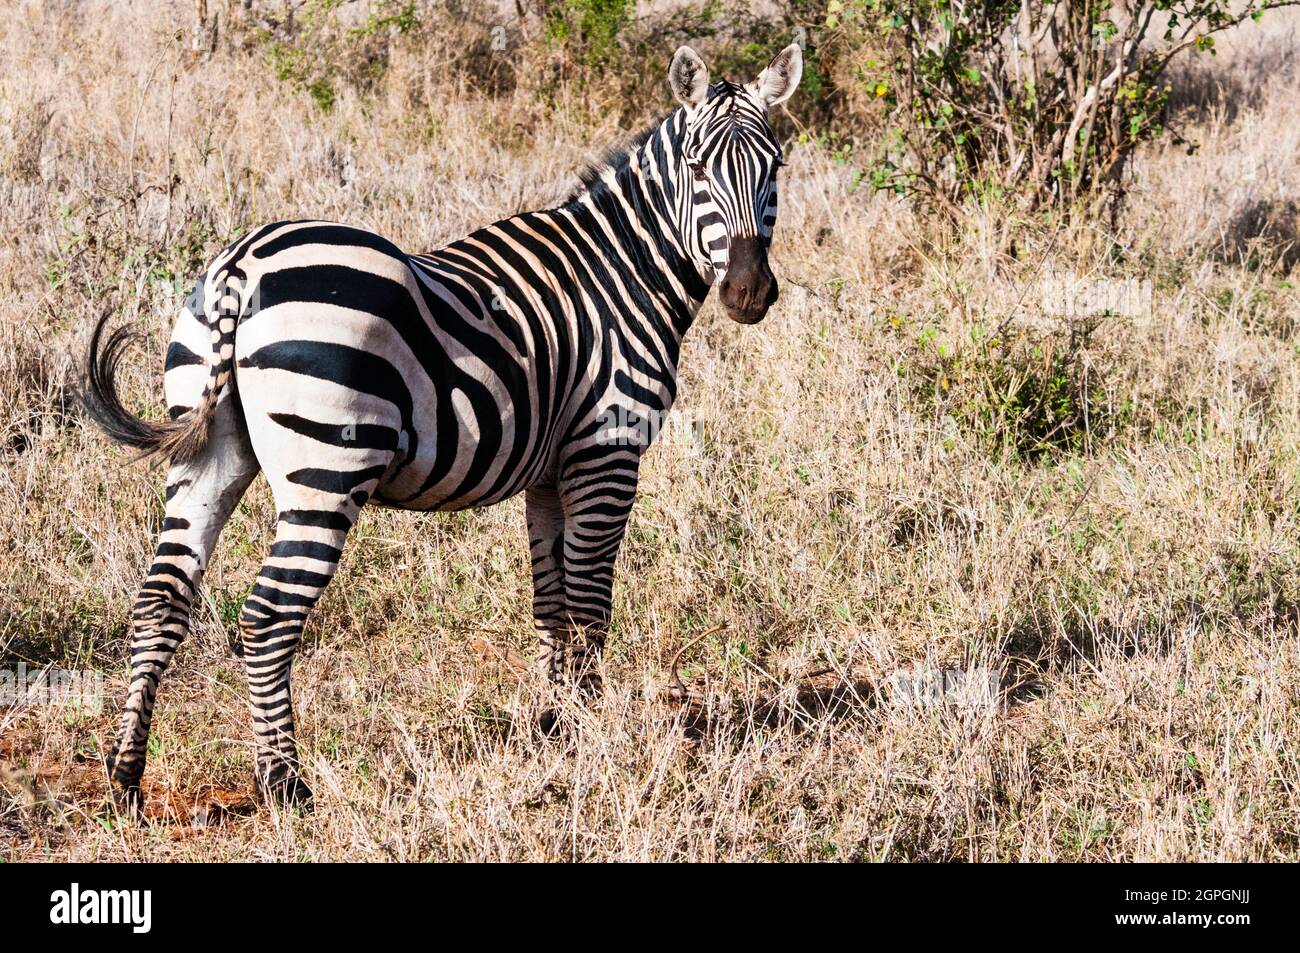 Kenia, Reserva Natural de Taita Hills, una cebra de Llanos (Equus quagga) Foto de stock